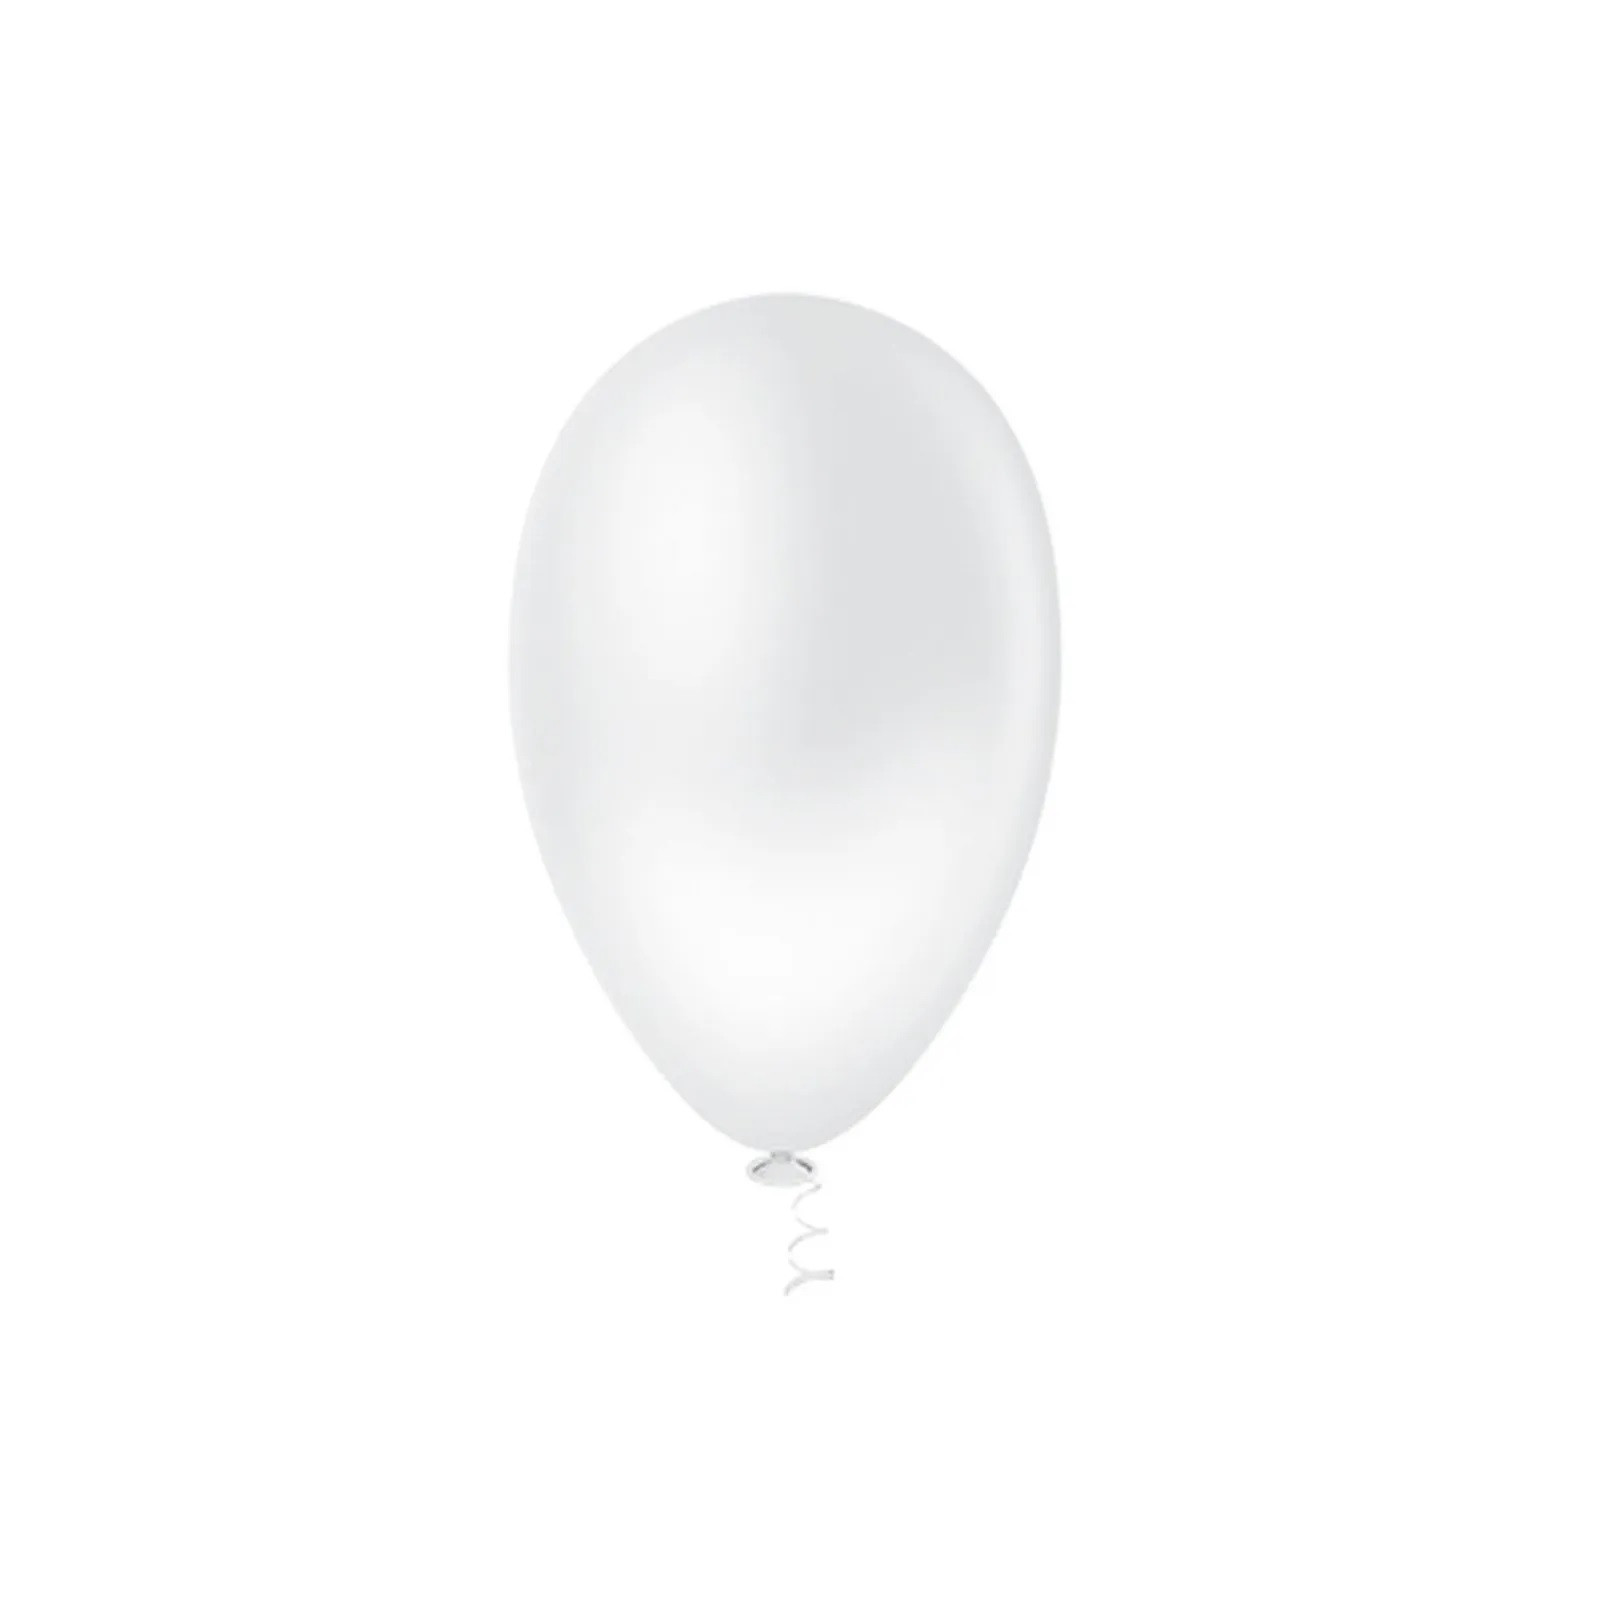 Balão Pera Liso Branco Nº6.5  c /50 unid - Pic Pic